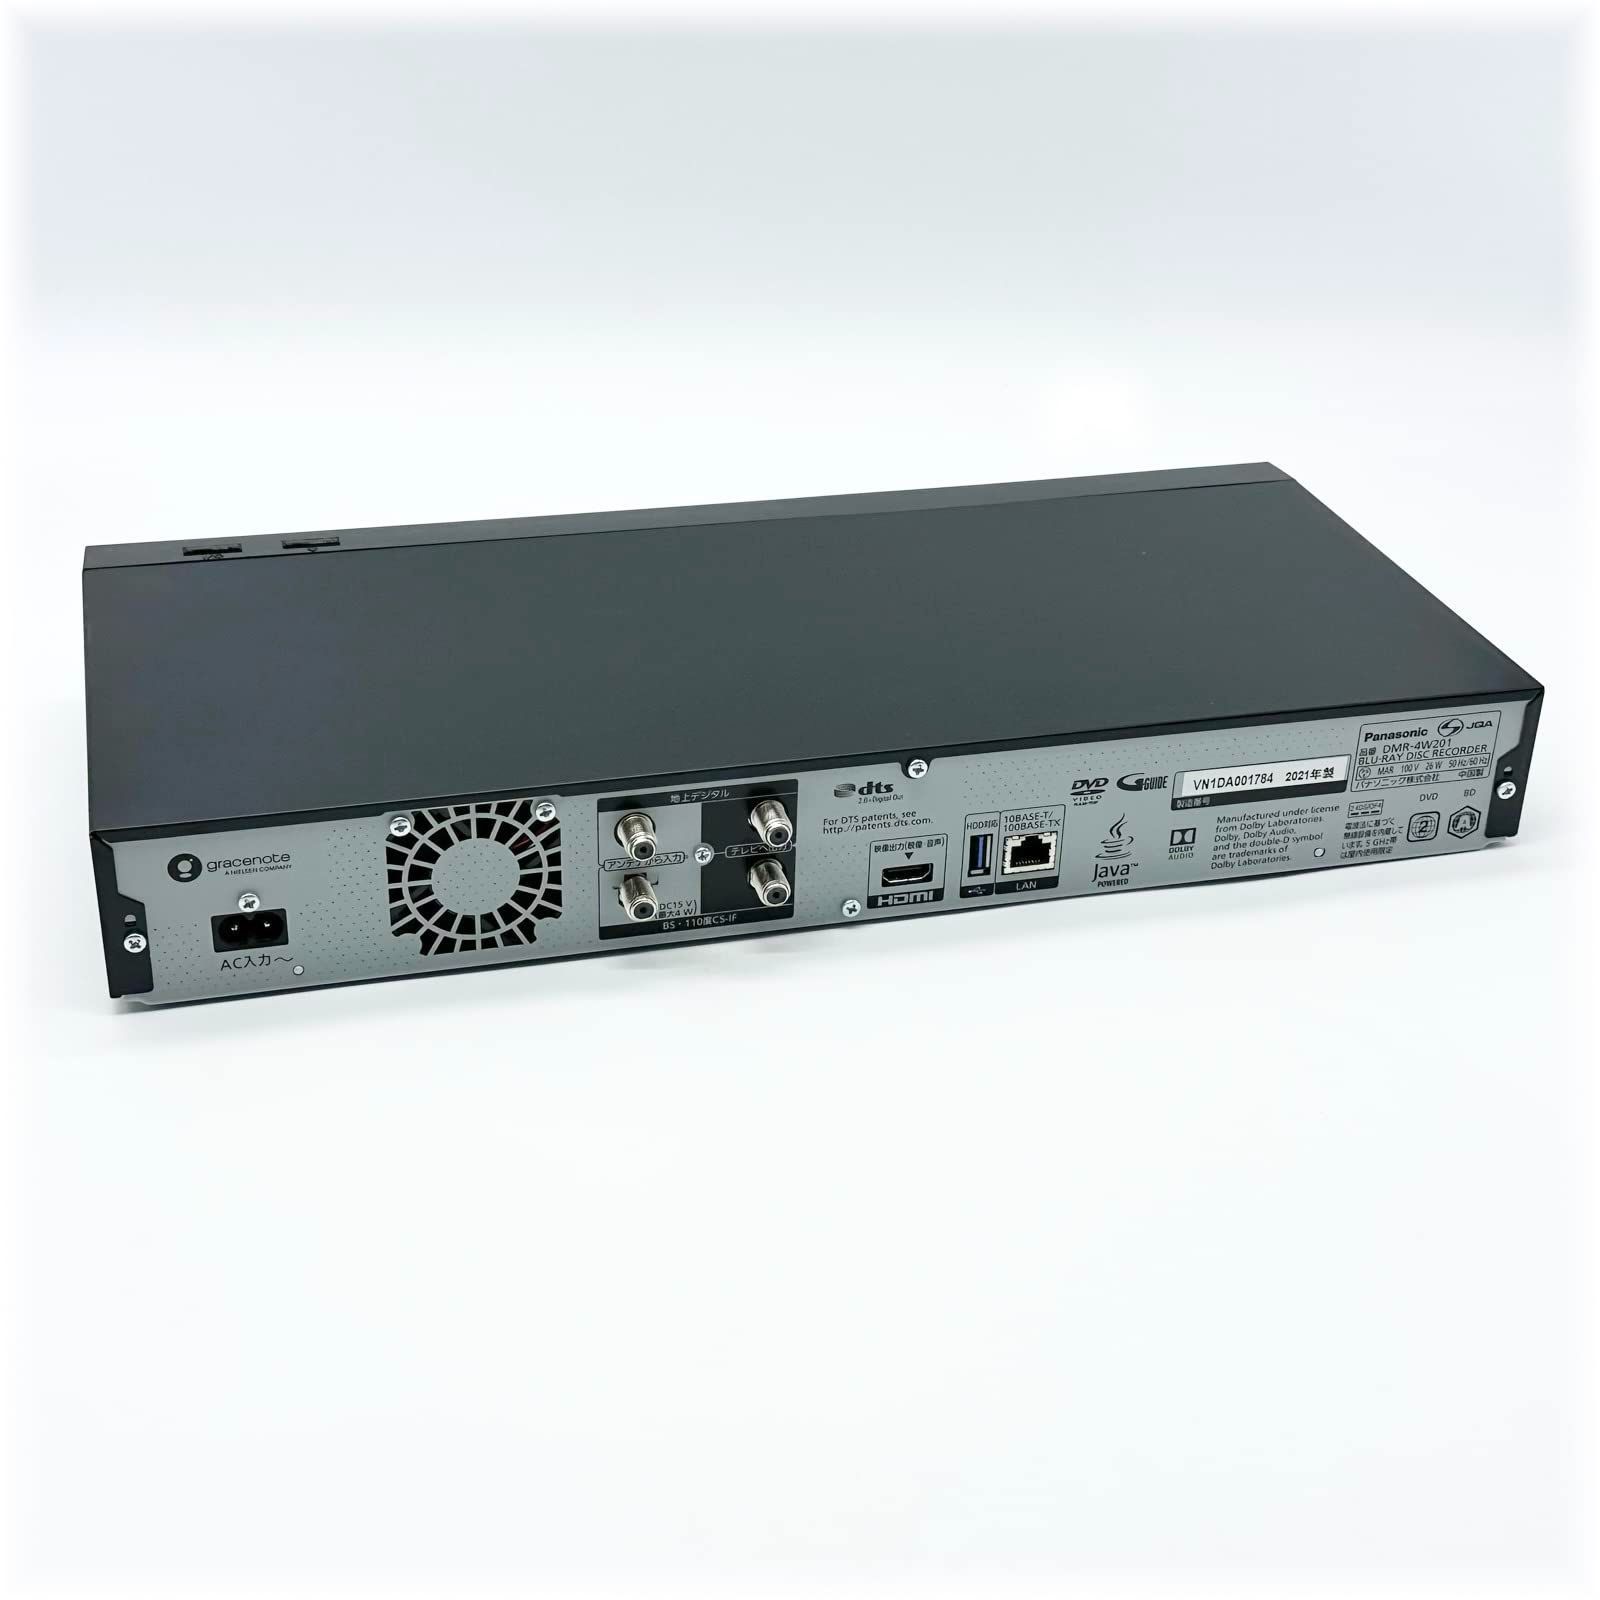 パナソニック 2TB 3チューナー ブルーレイレコーダー 4K DIGA DMR-4W201 4Kチューナー内蔵 4K放送長時間録画/2番組同時録画対応 